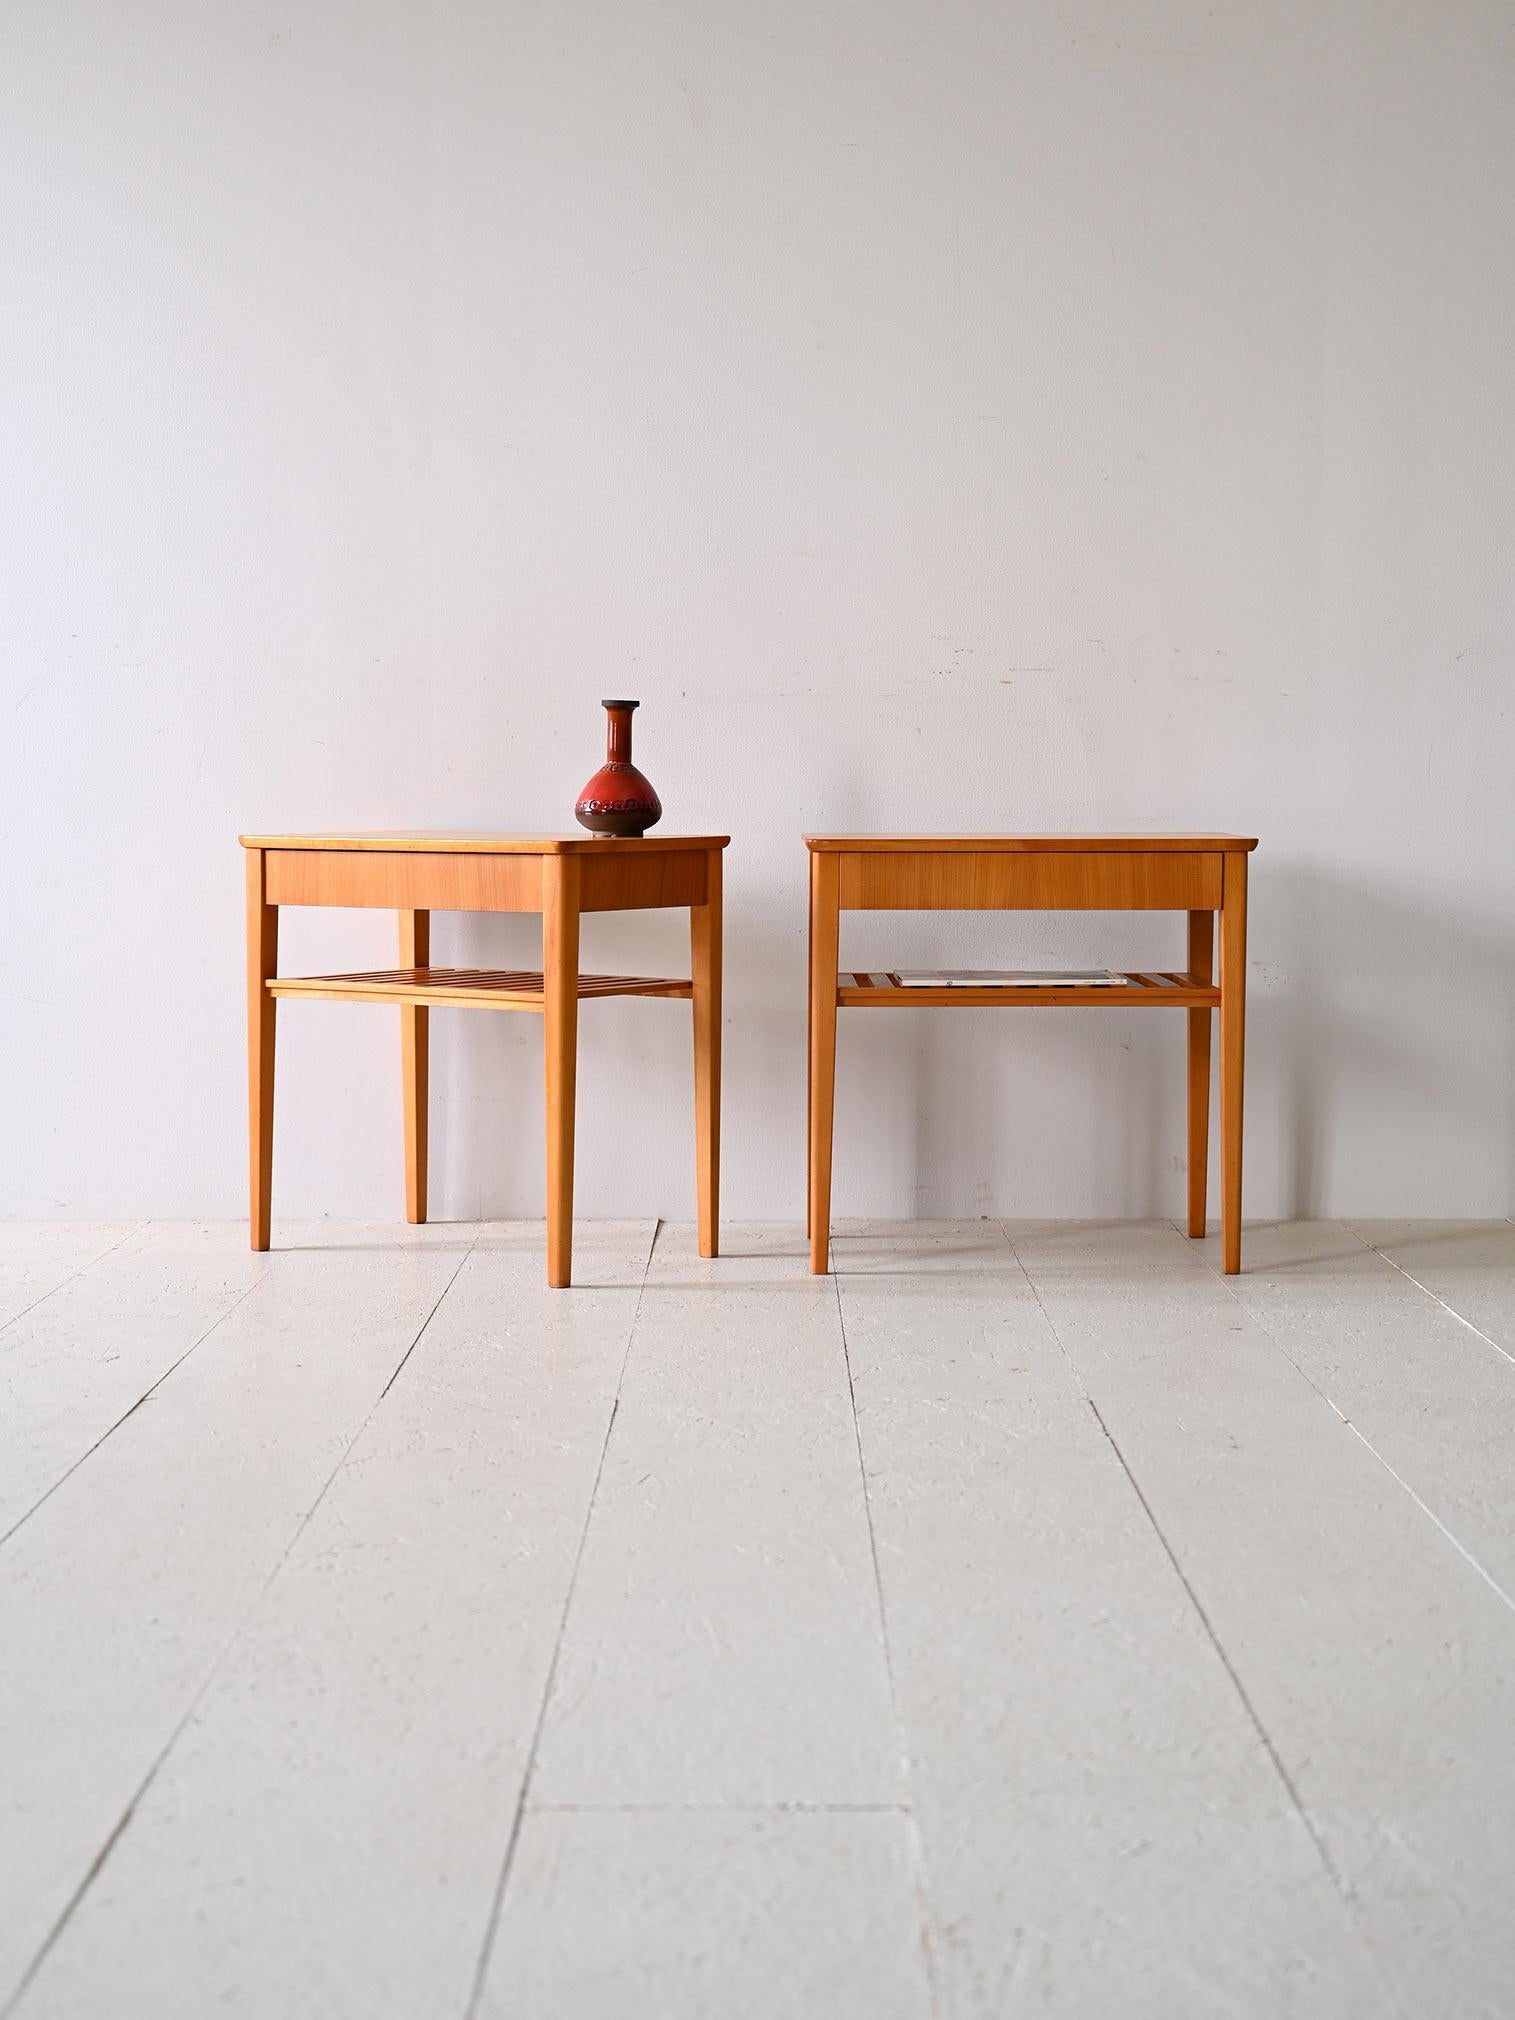 Zwei originale skandinavische Couchtische/Nachttische aus den 1960er Jahren.

Dieses elegante und funktionelle Nachttischpaar verkörpert den nordischen Stil mit extrem einfachen und klaren Linien, die sich durch ein minimalistisches und klassisches